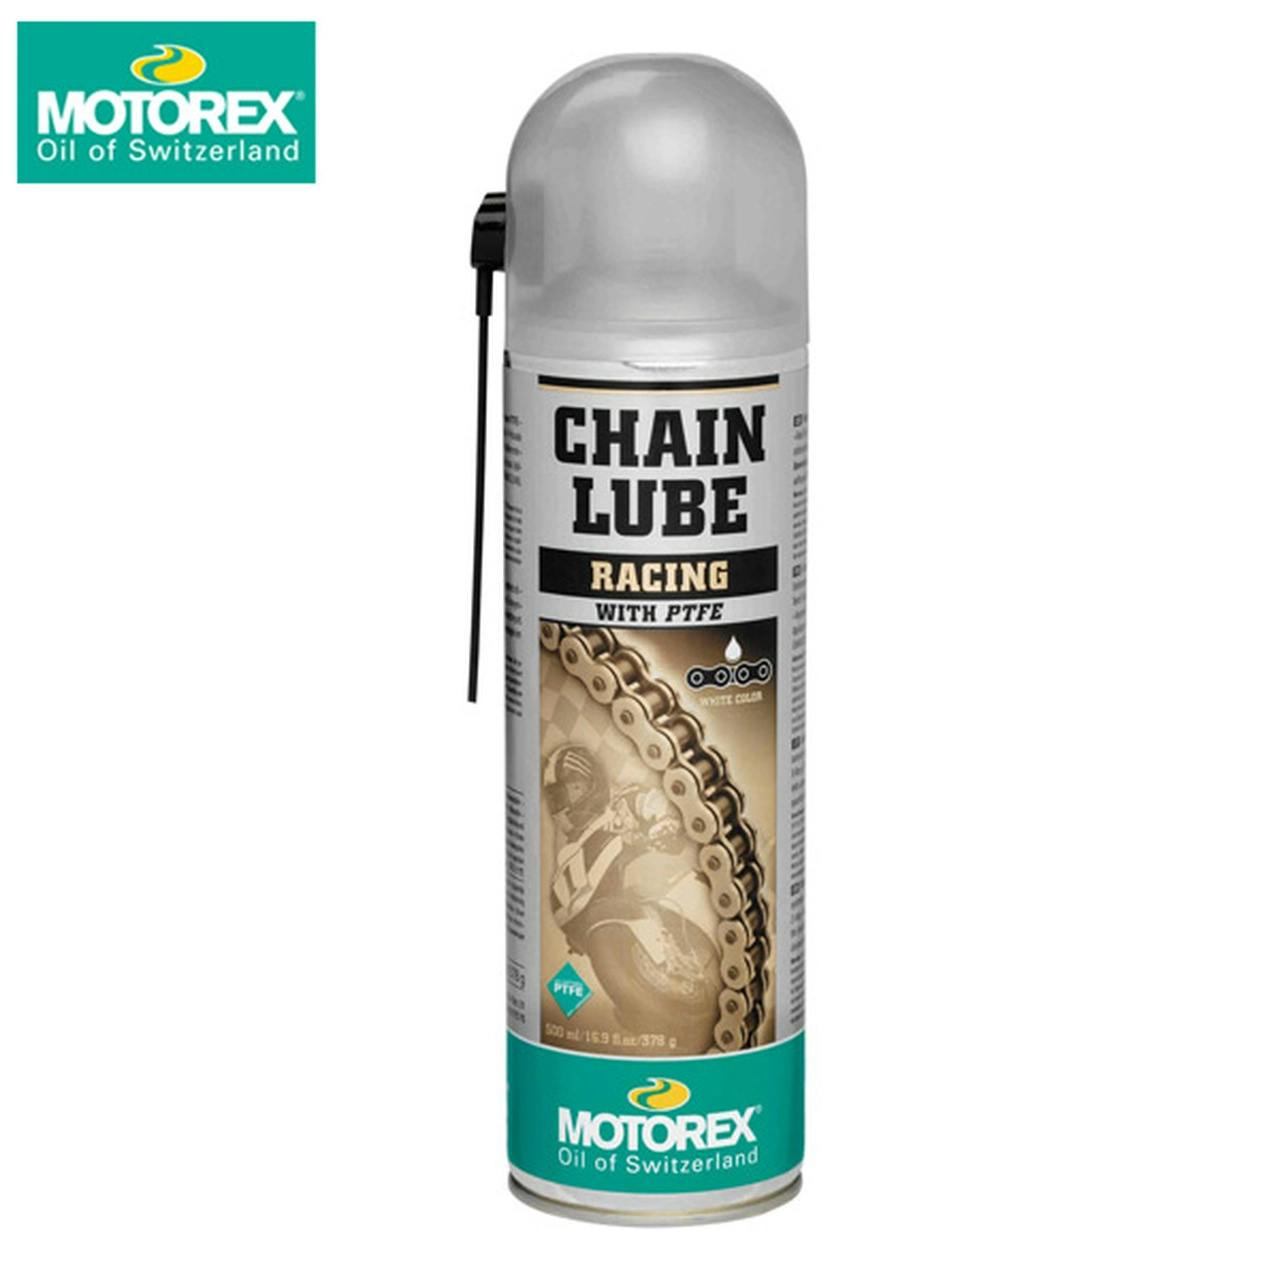 Motorex MTX chain lube racing